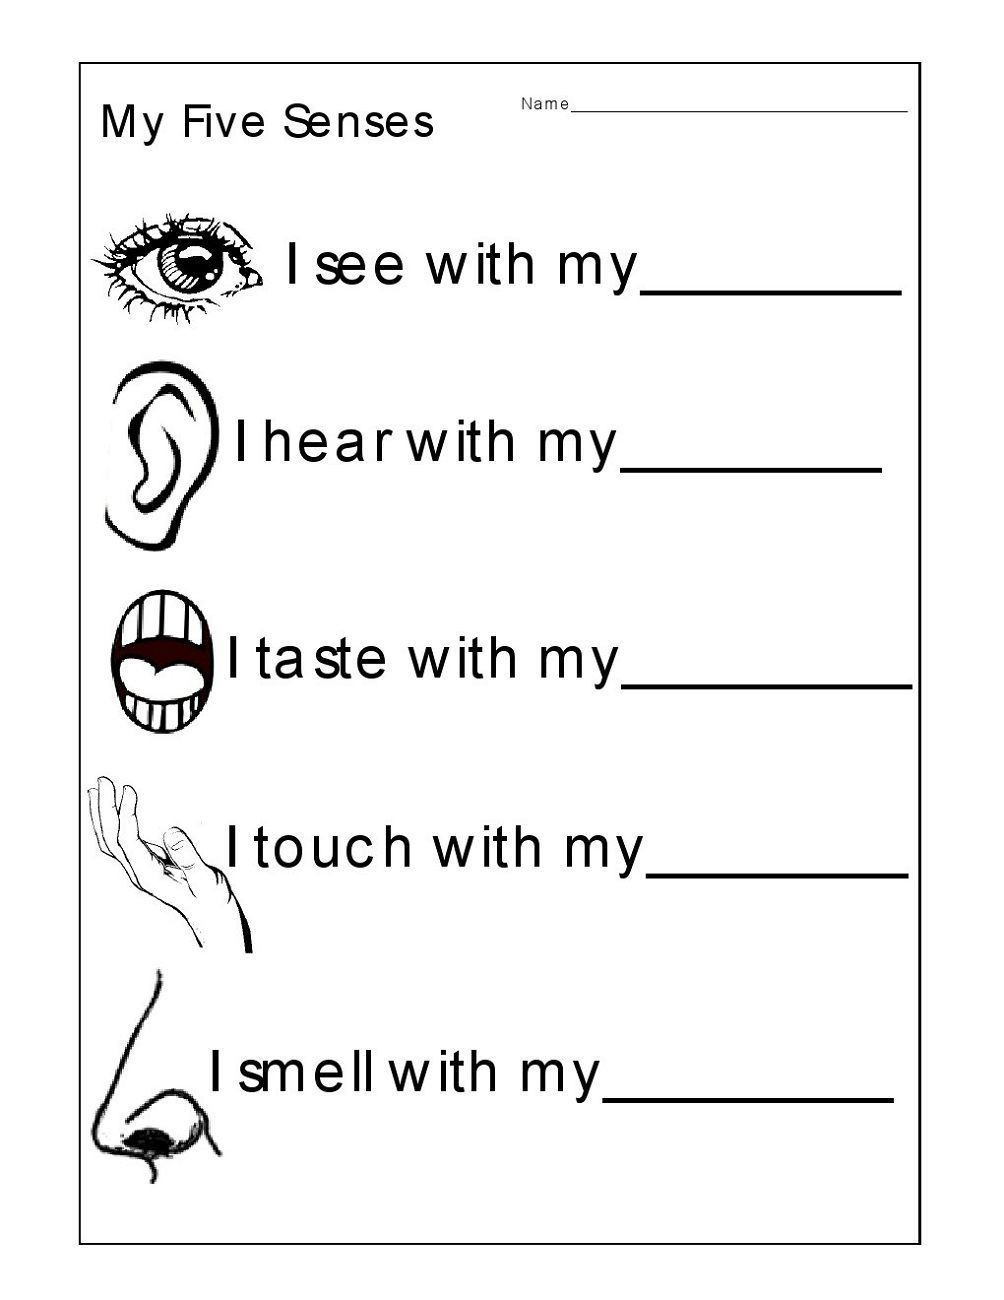 Five Senses Worksheets for Kindergarten Free Activity Sheets Kids Printable Worksheets Kindergarten